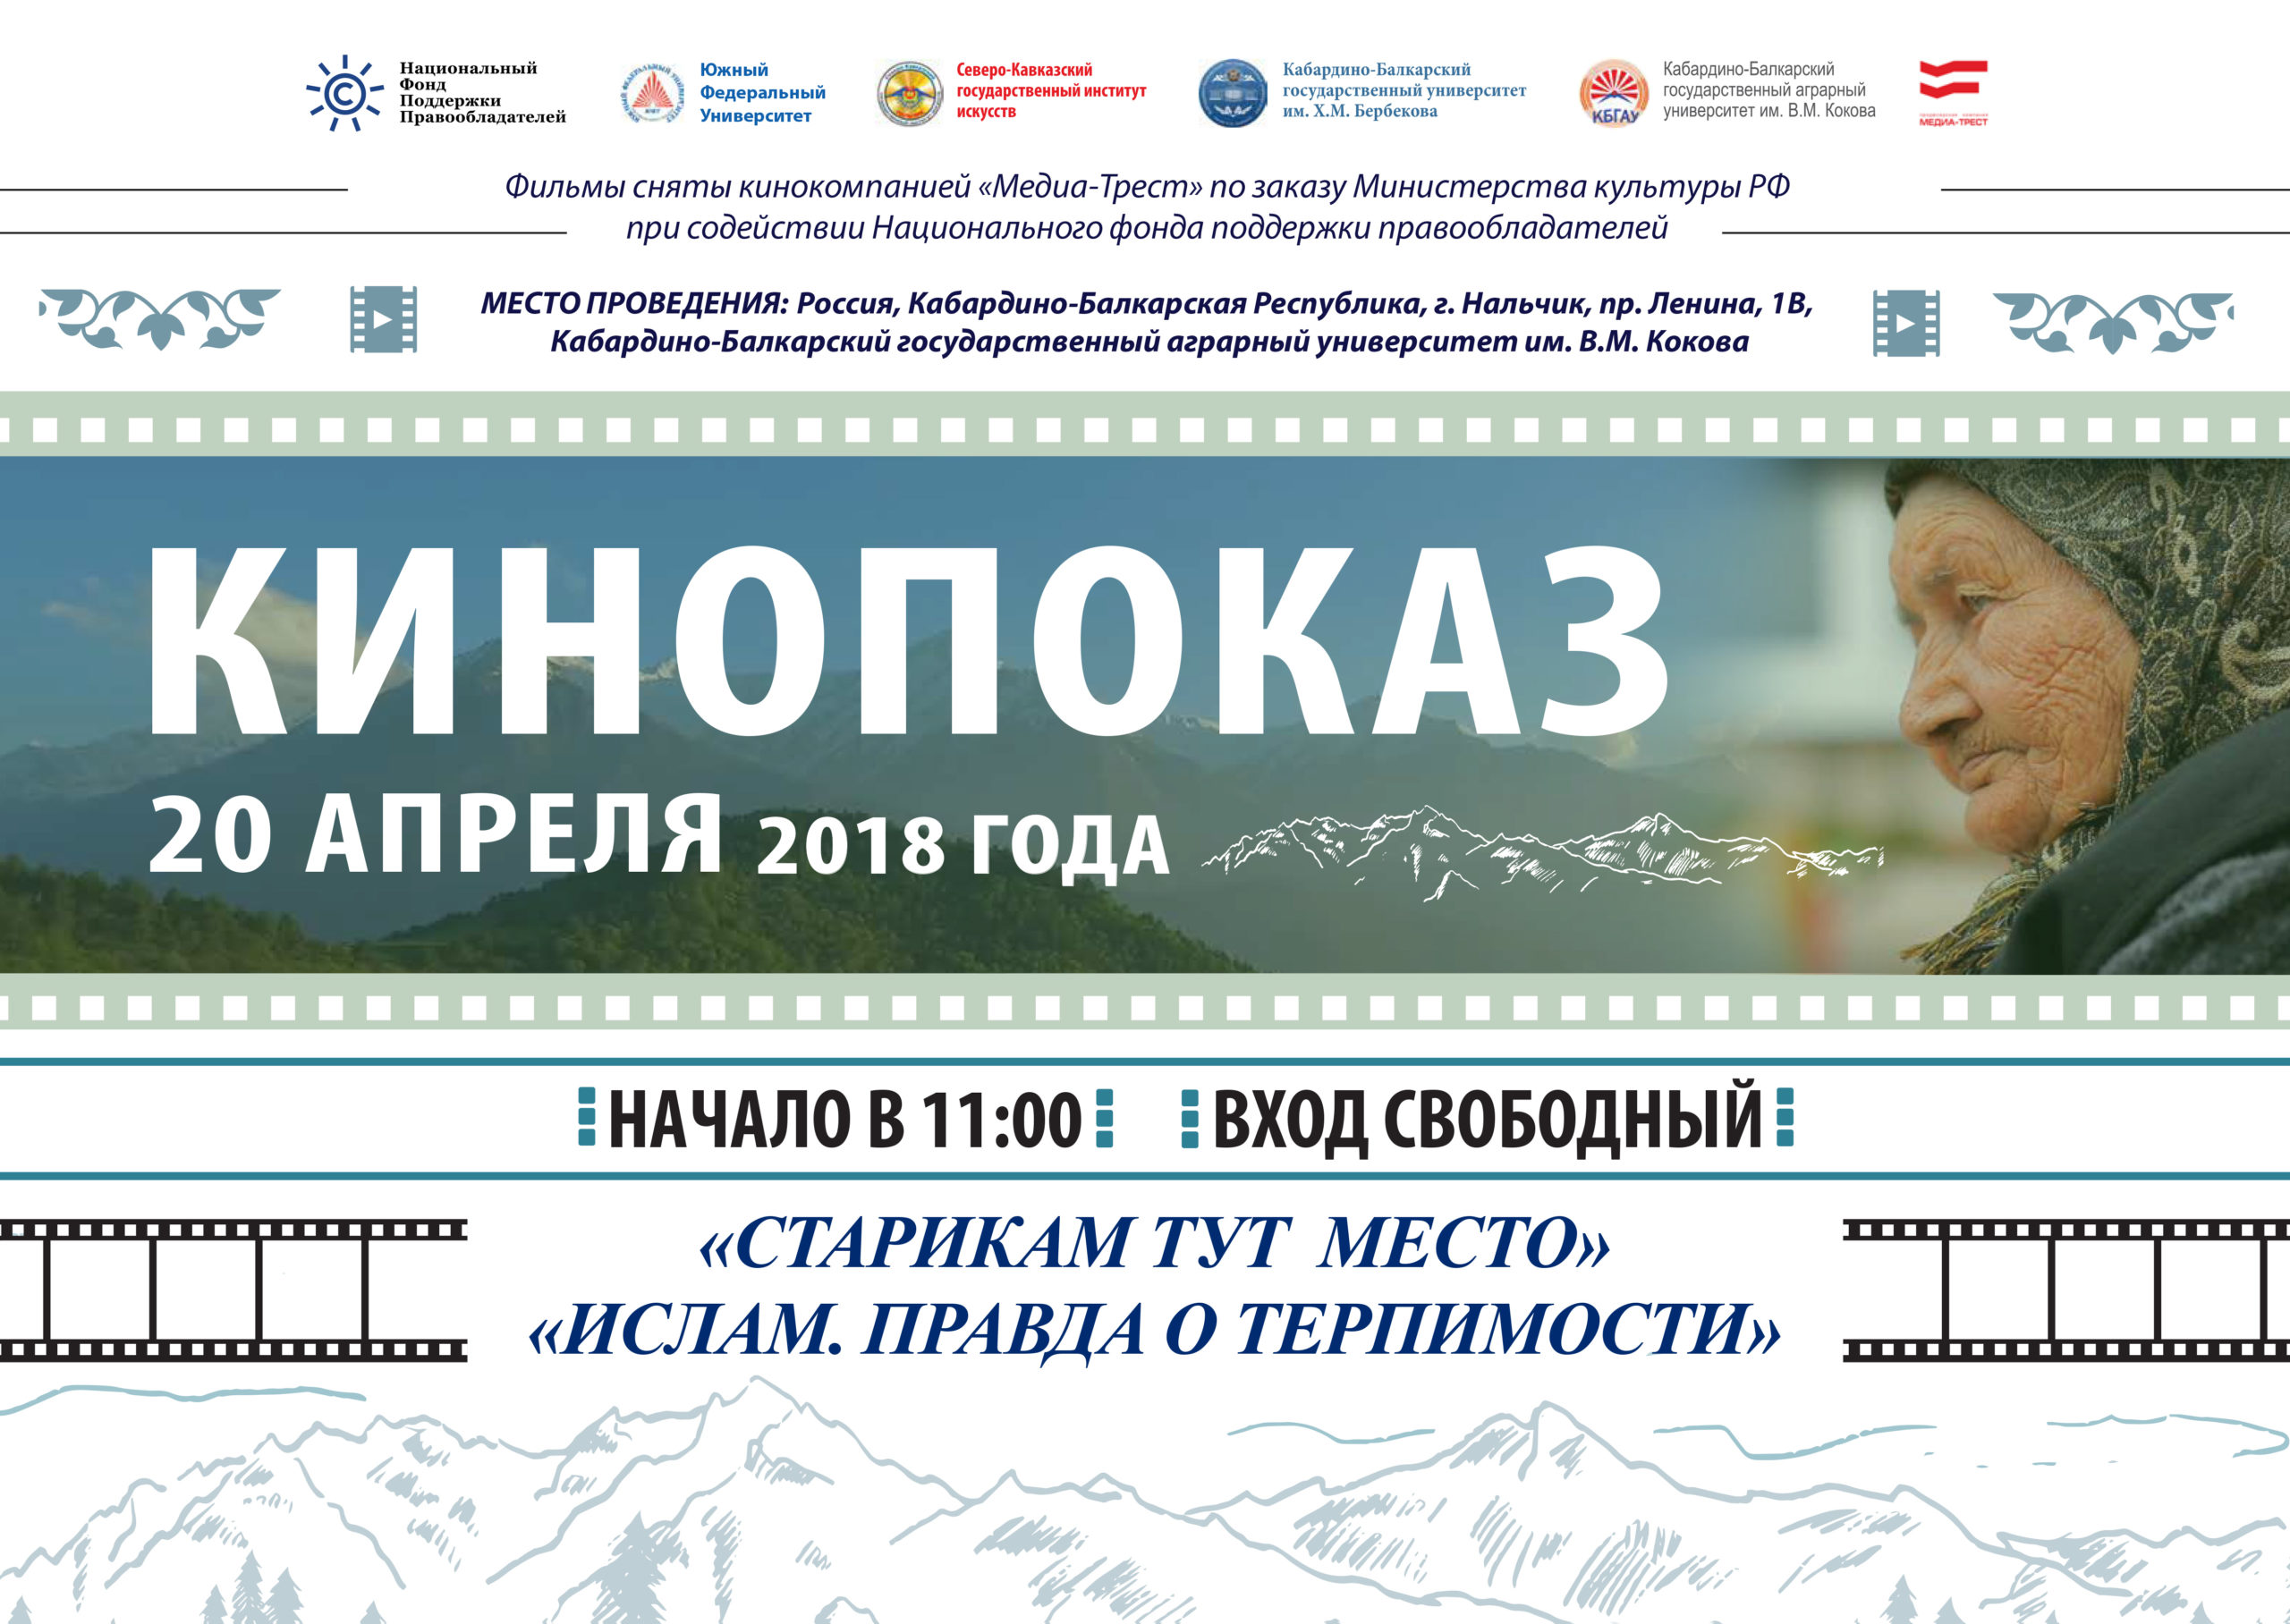 Культурно-просветительский проект НФПП «Киногостиная – 2» откроется кинопоказами в Нальчике